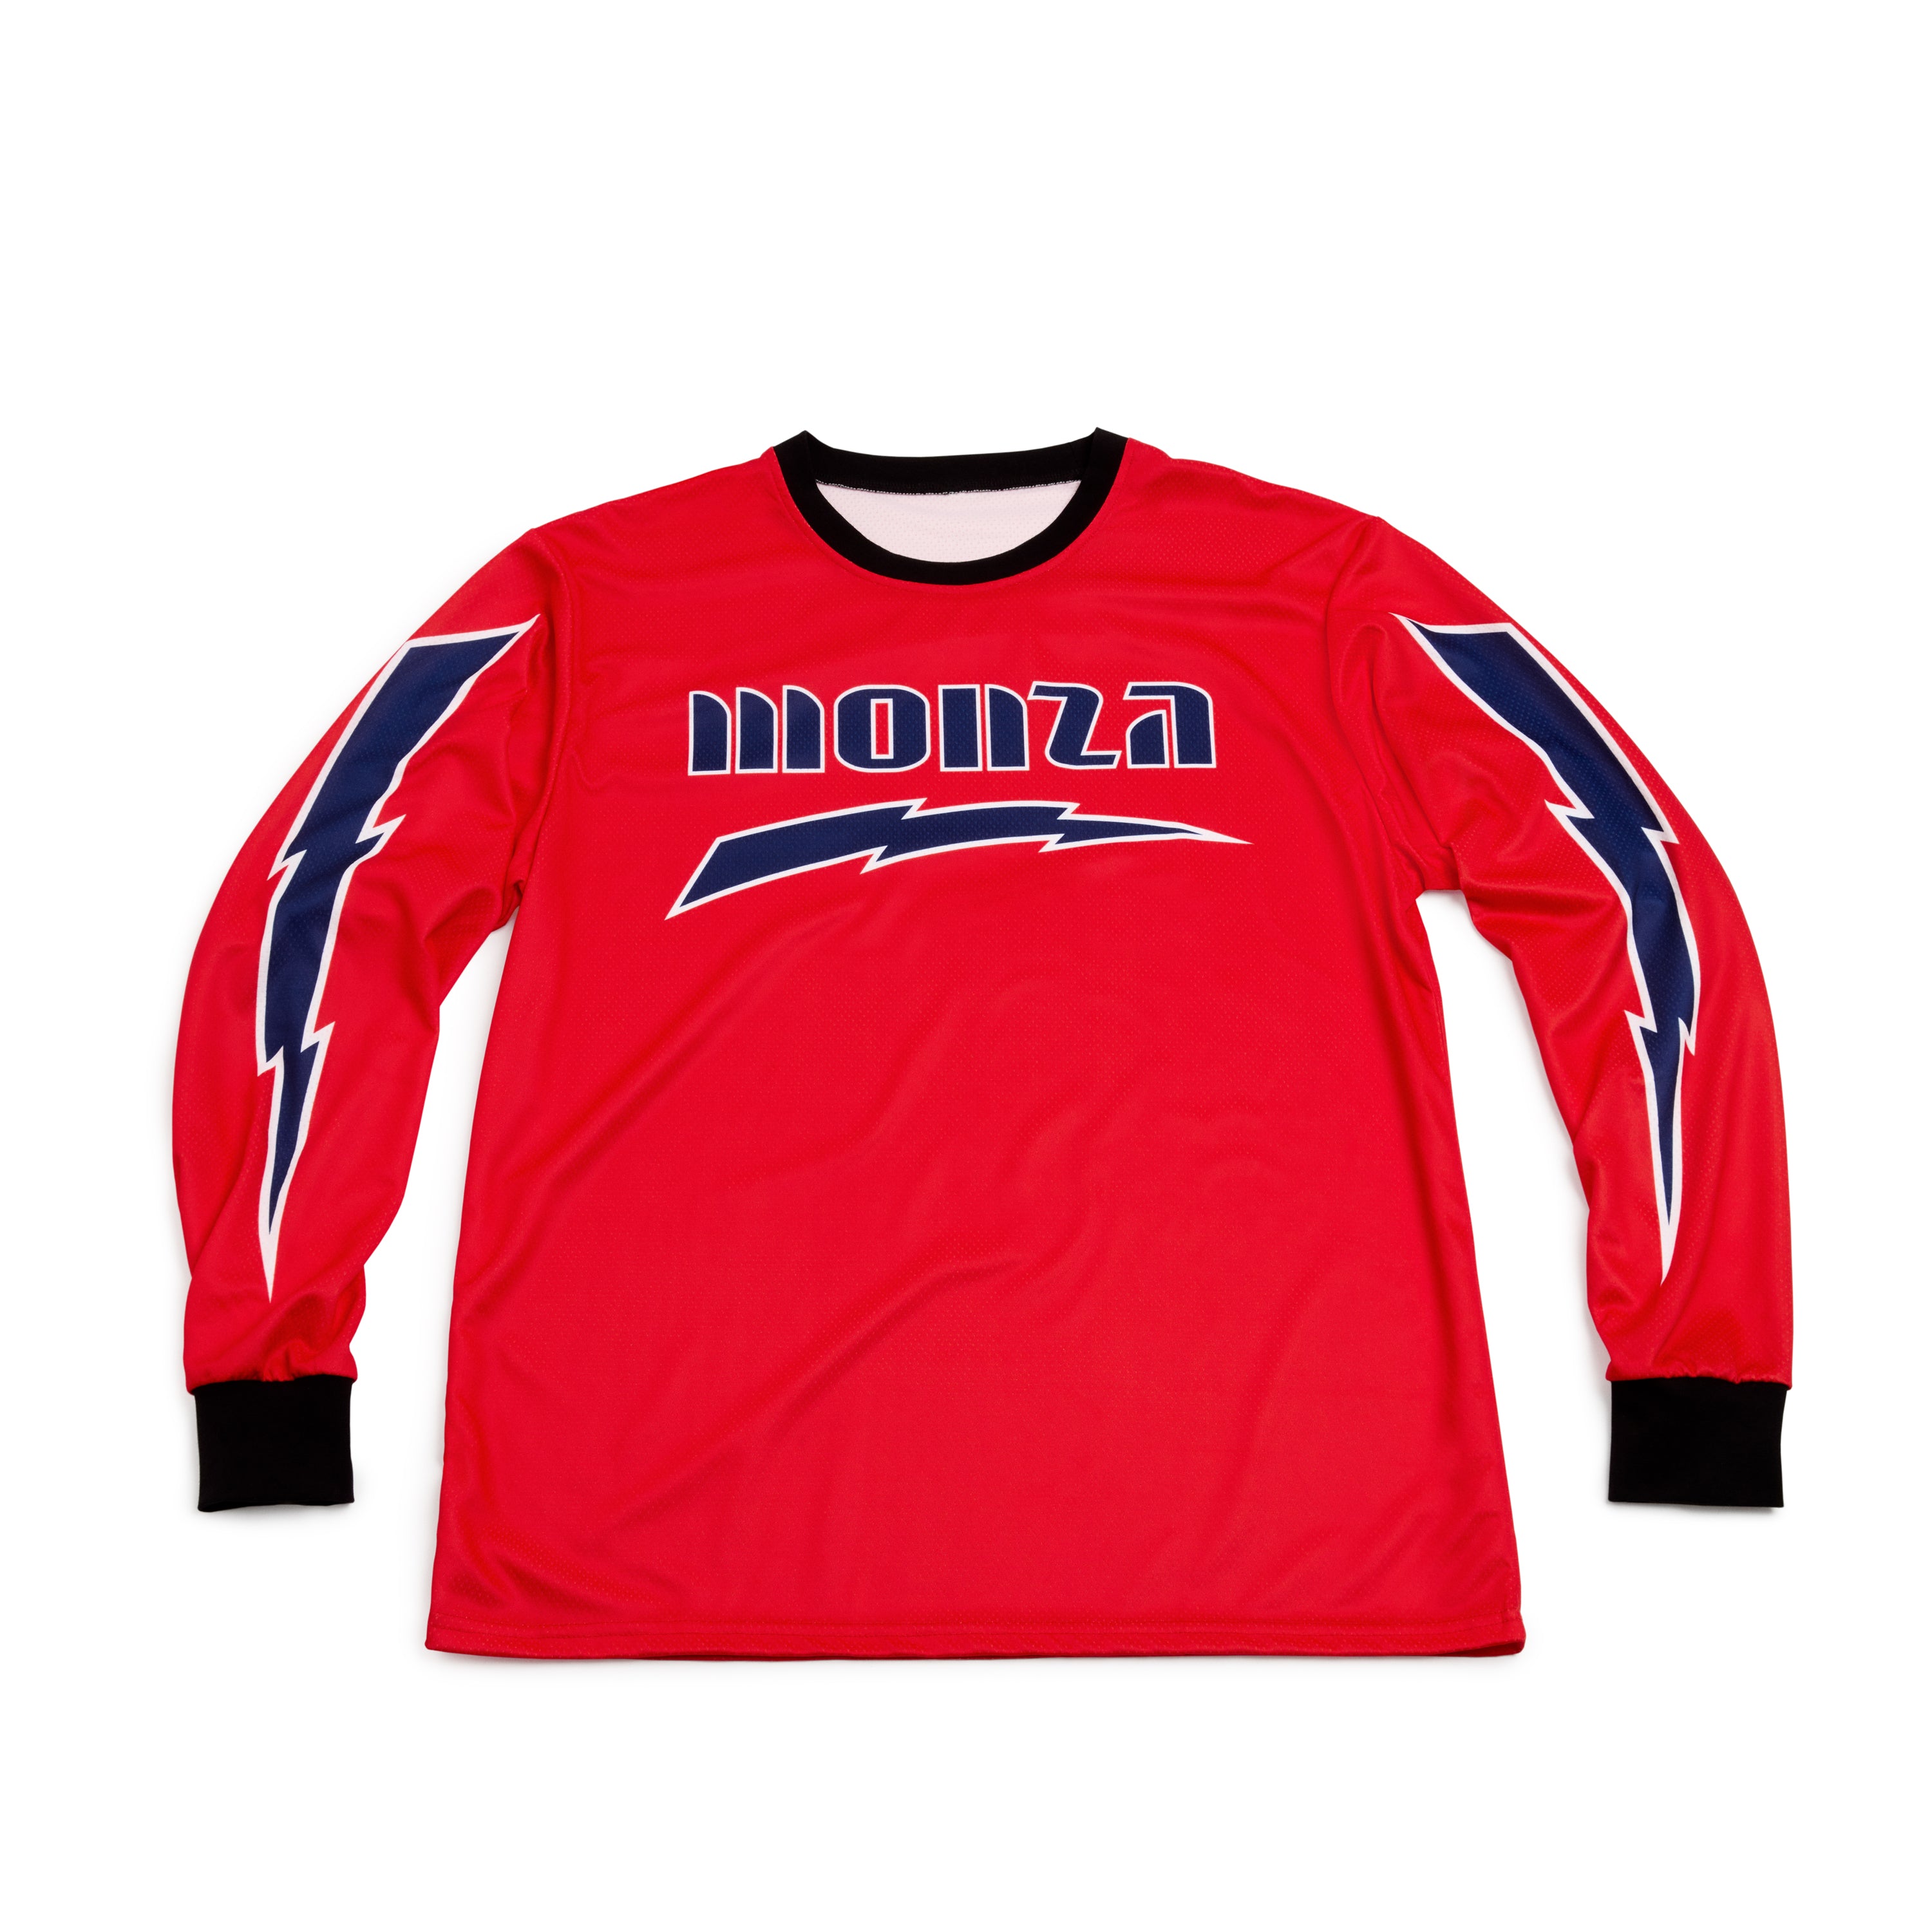 Monza Lightning Bolt Red Jersey